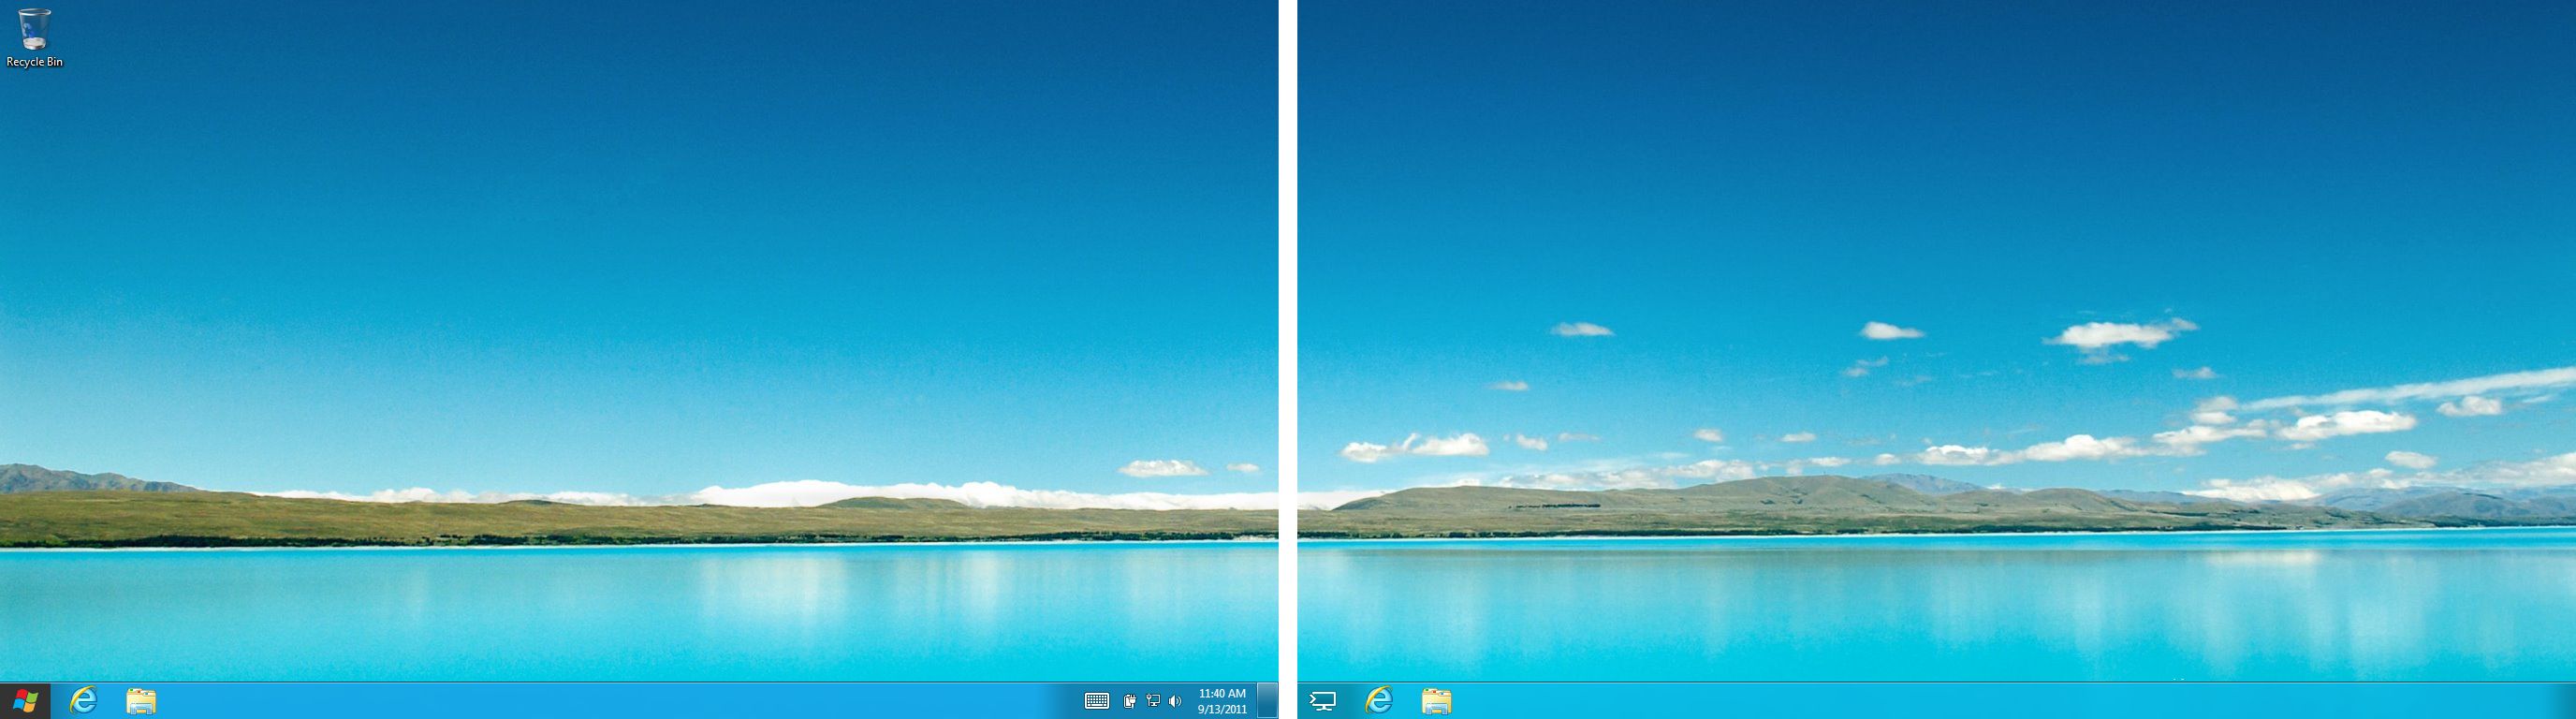 Hỗ trợ đa màn hình trên Windows 8 sẽ giúp bạn làm việc nhanh hơn và hiệu quả hơn. Với việc có thể chia đôi màn hình và hiển thị nhiều ứng dụng cùng lúc, bạn sẽ tiết kiệm thời gian và làm việc một cách thông minh hơn bao giờ hết.